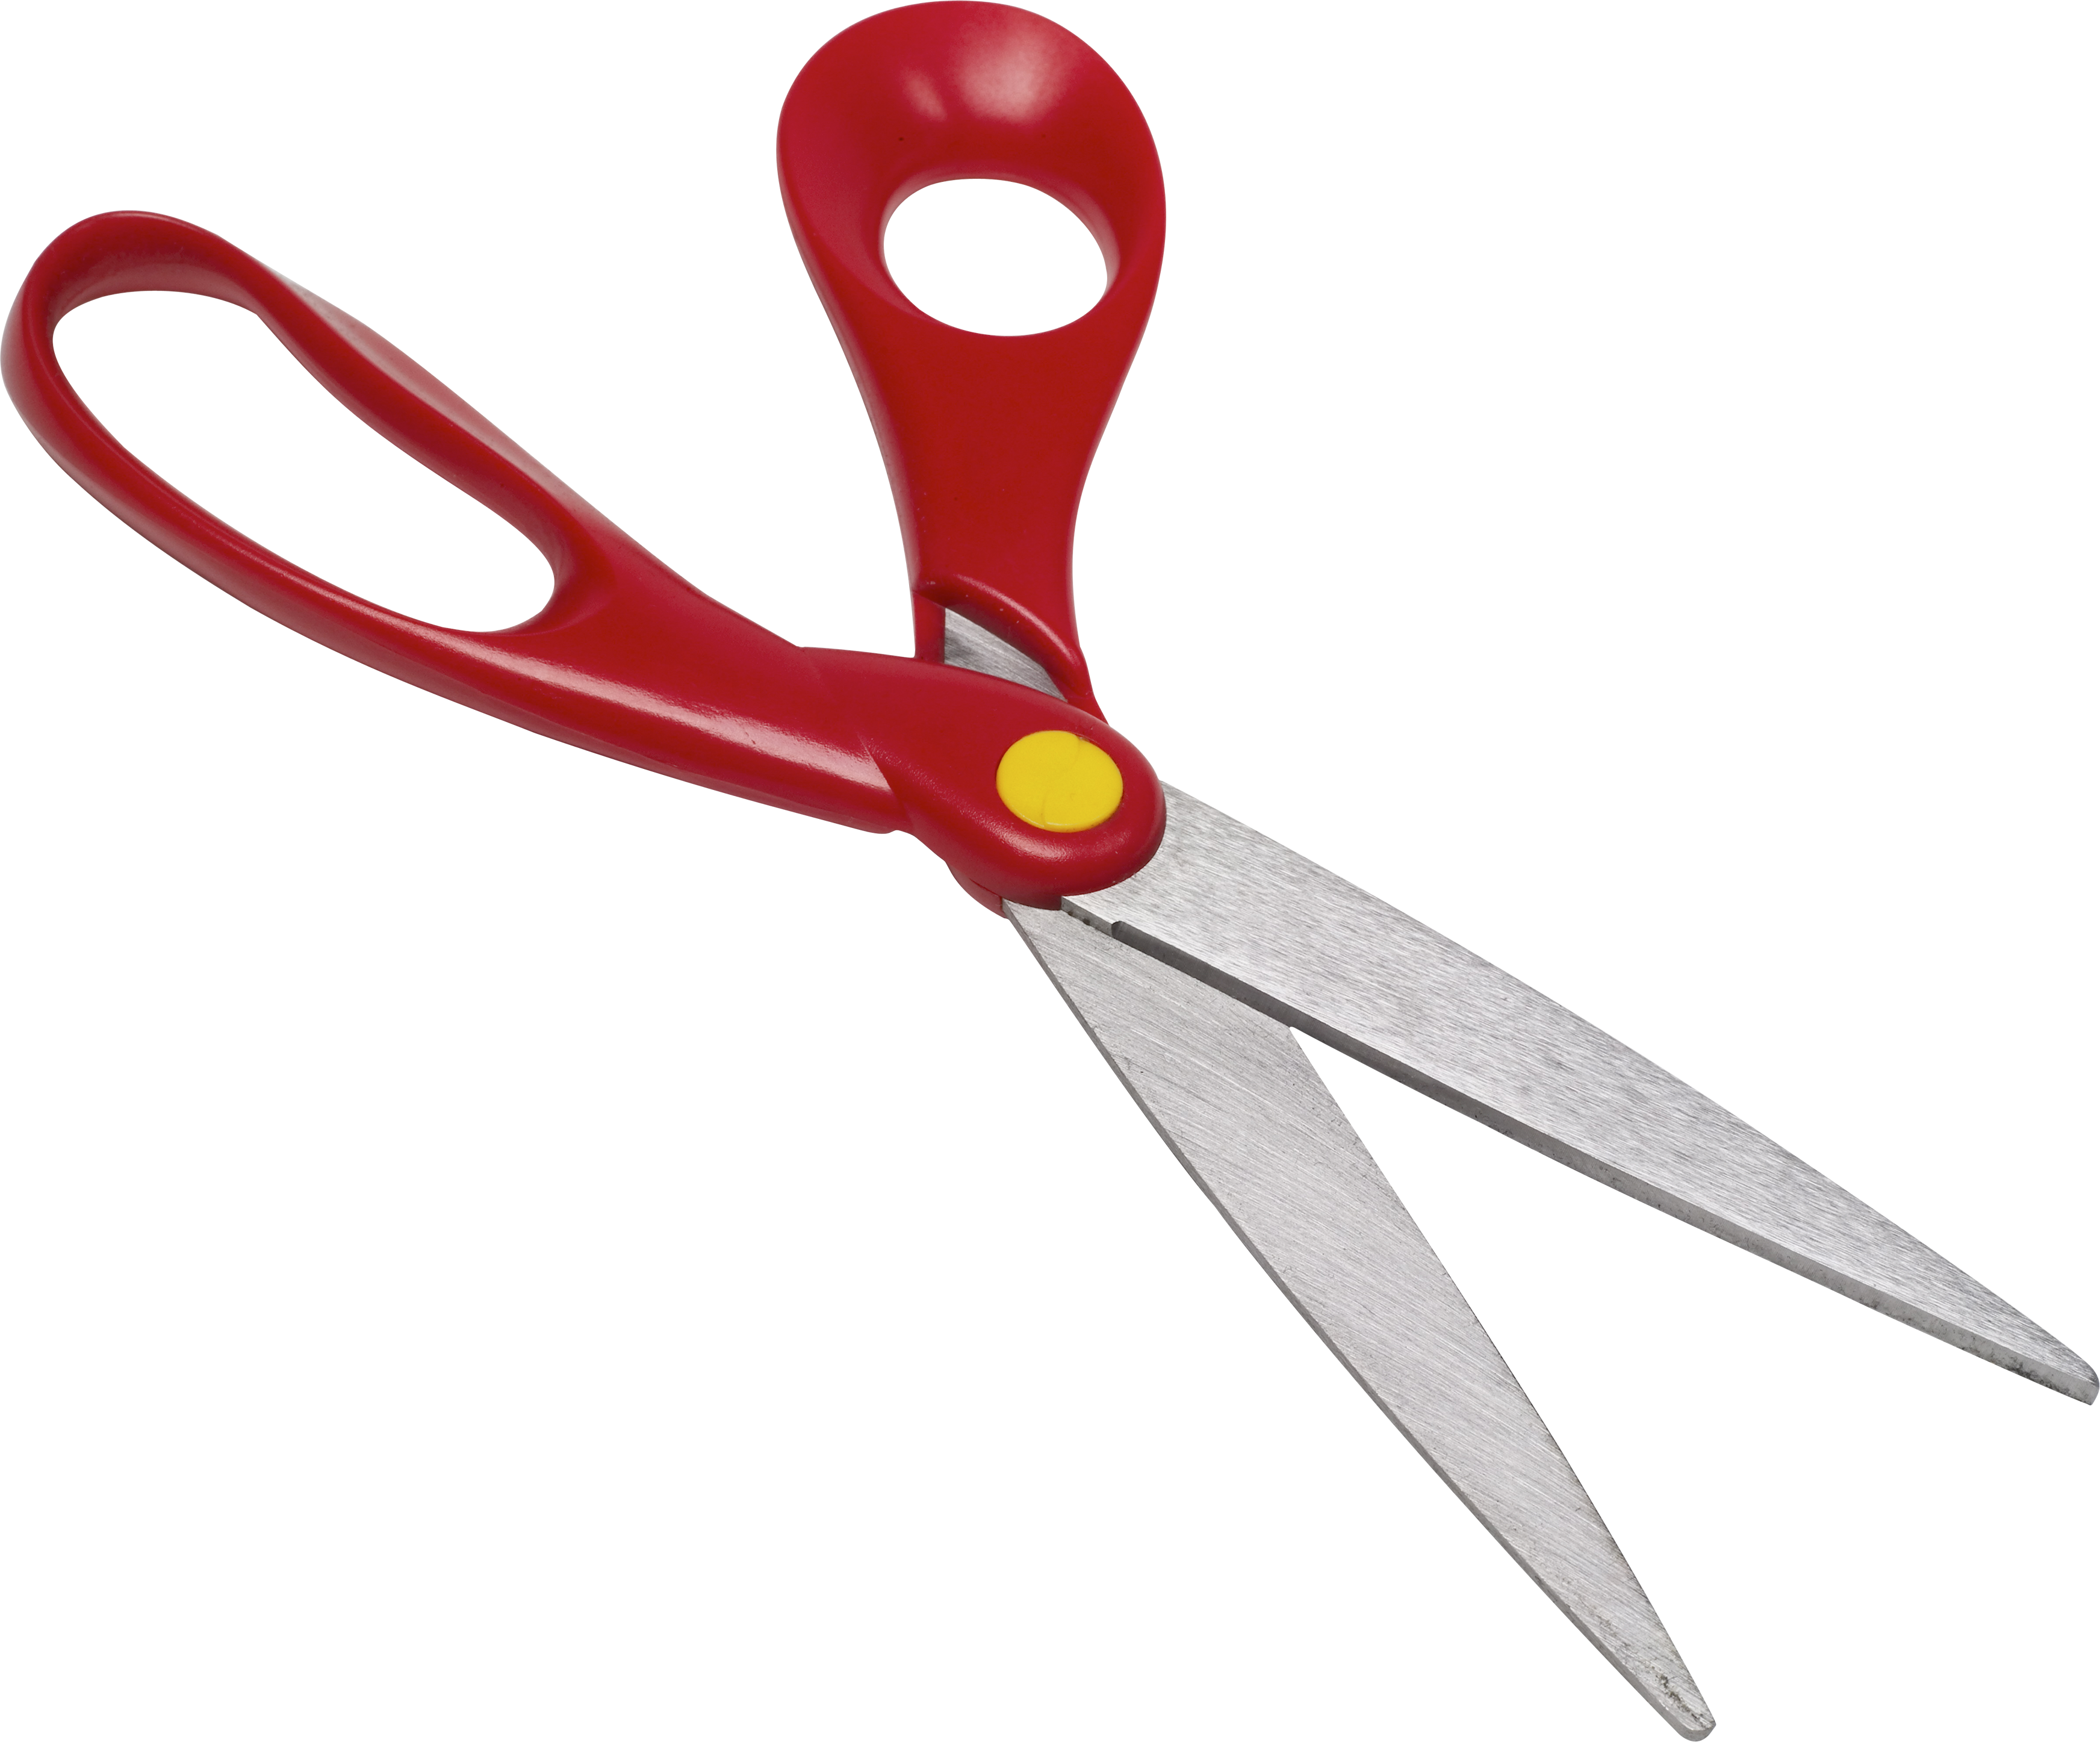 clipart of scissors - photo #26